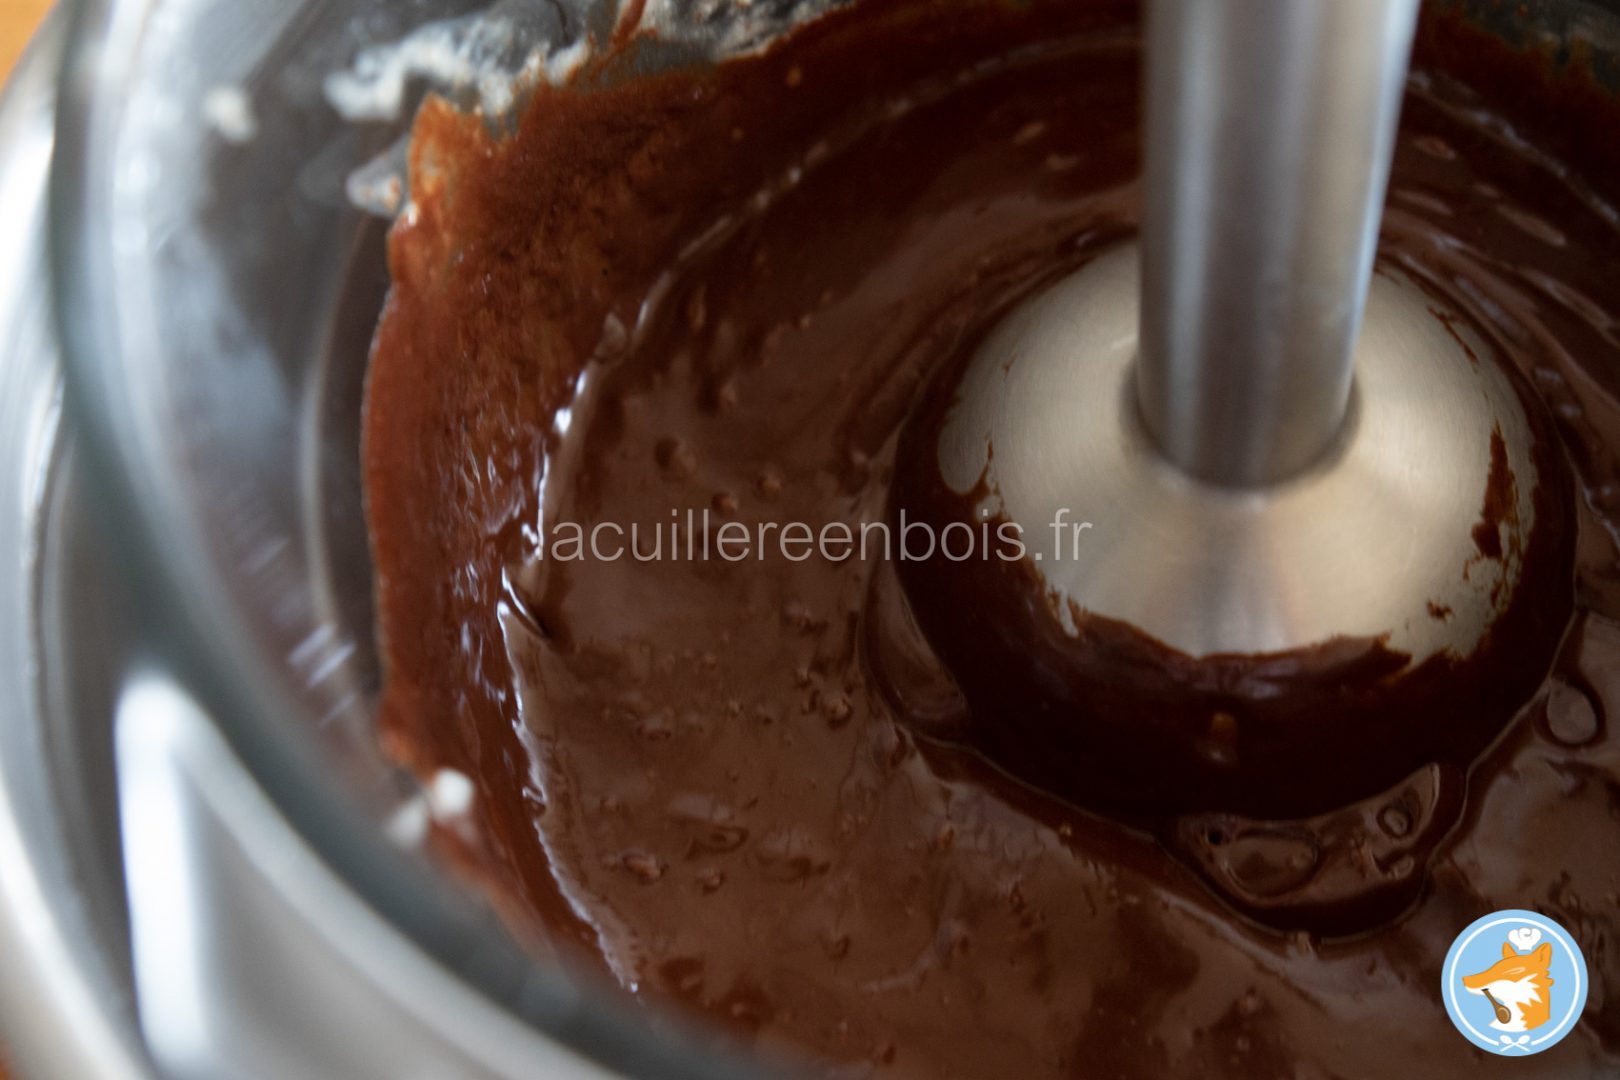 lacuillereenbois.fr_paris-brest_cacao_praliné_délicieux